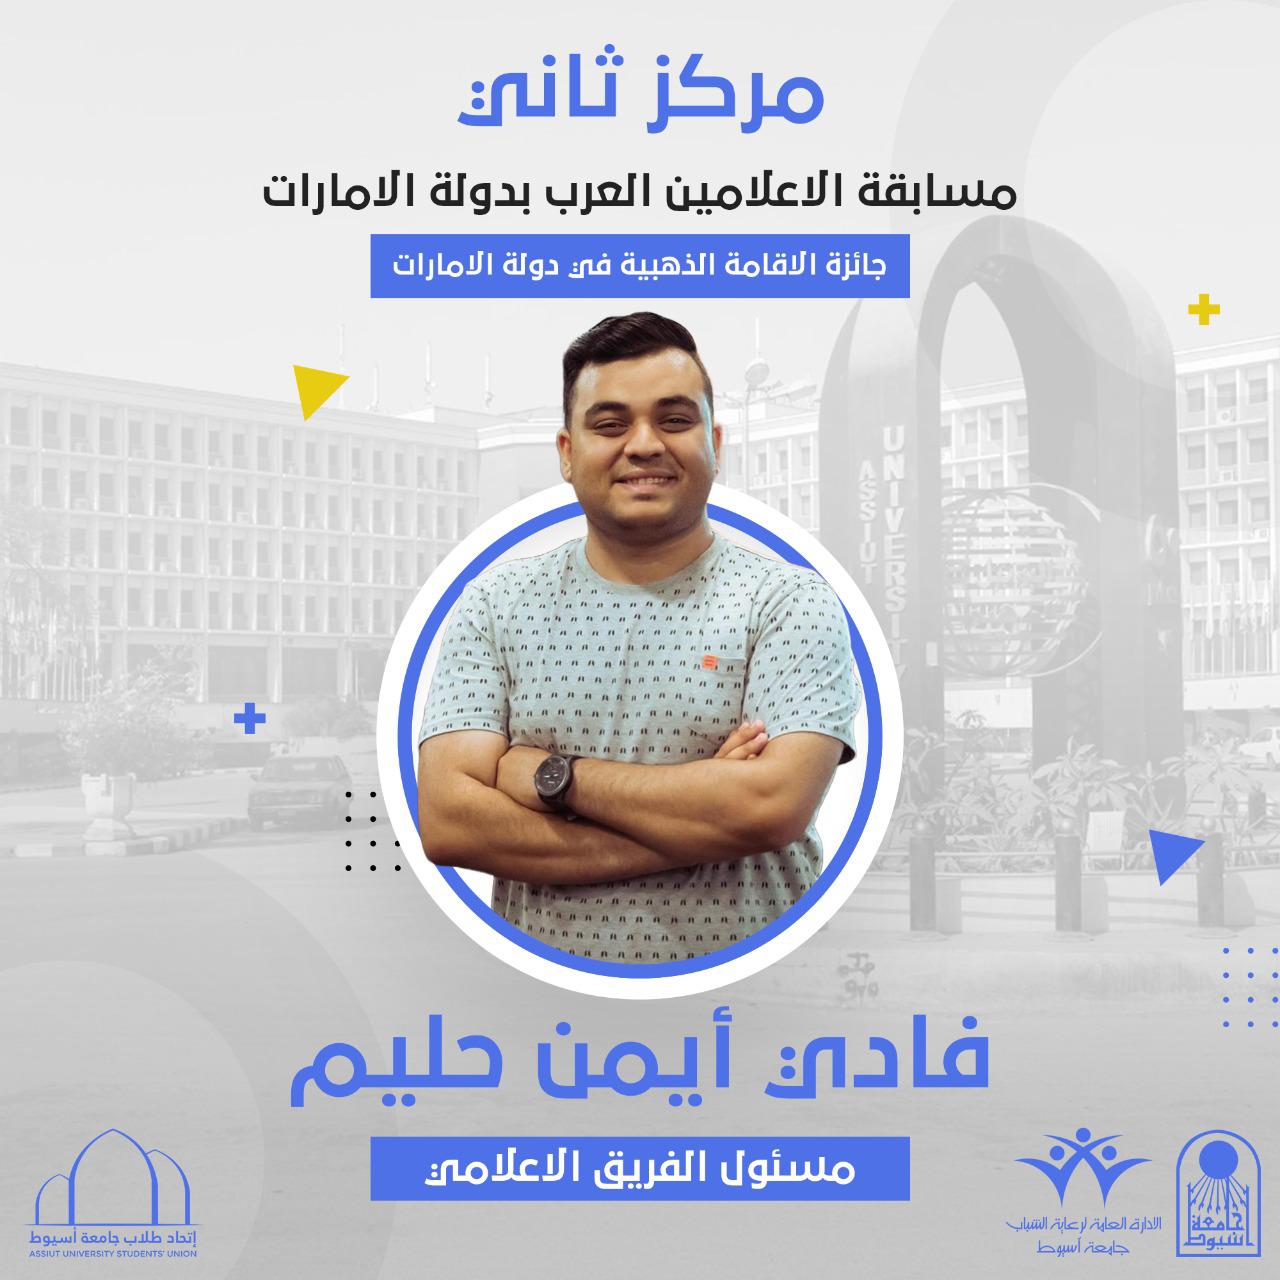 فادي أيمن طالب جامعة أسيوط يحصد المركز الثاني في مسابقة الإعلاميين العرب فى دبى